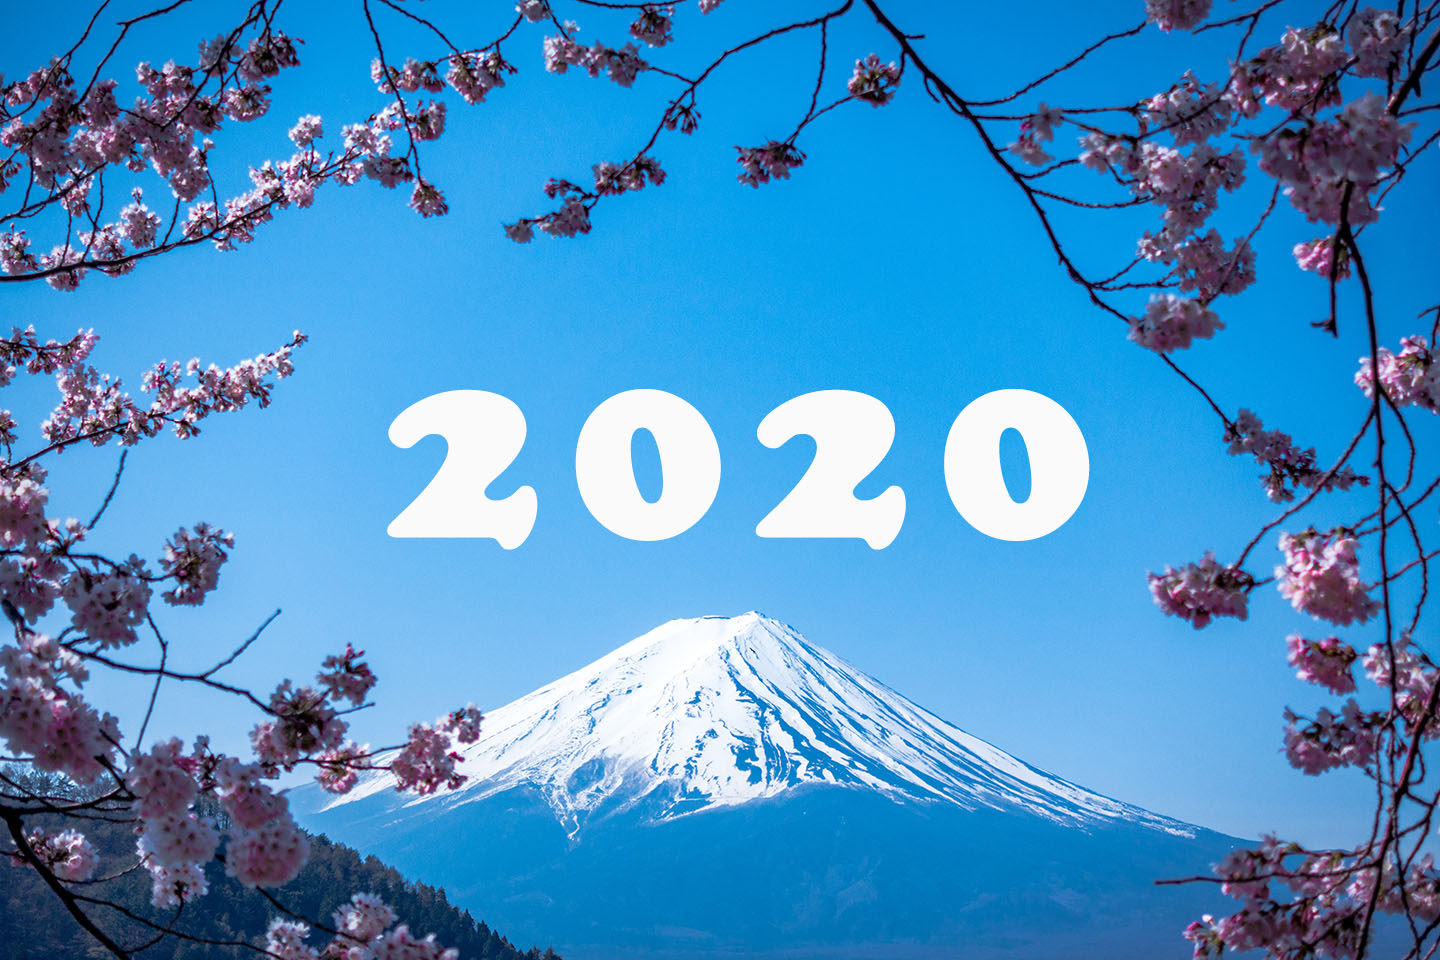 2020 진화하는 도쿄! 일본 여행 계획에 필수 체크할 뉴플레이스 엄선!